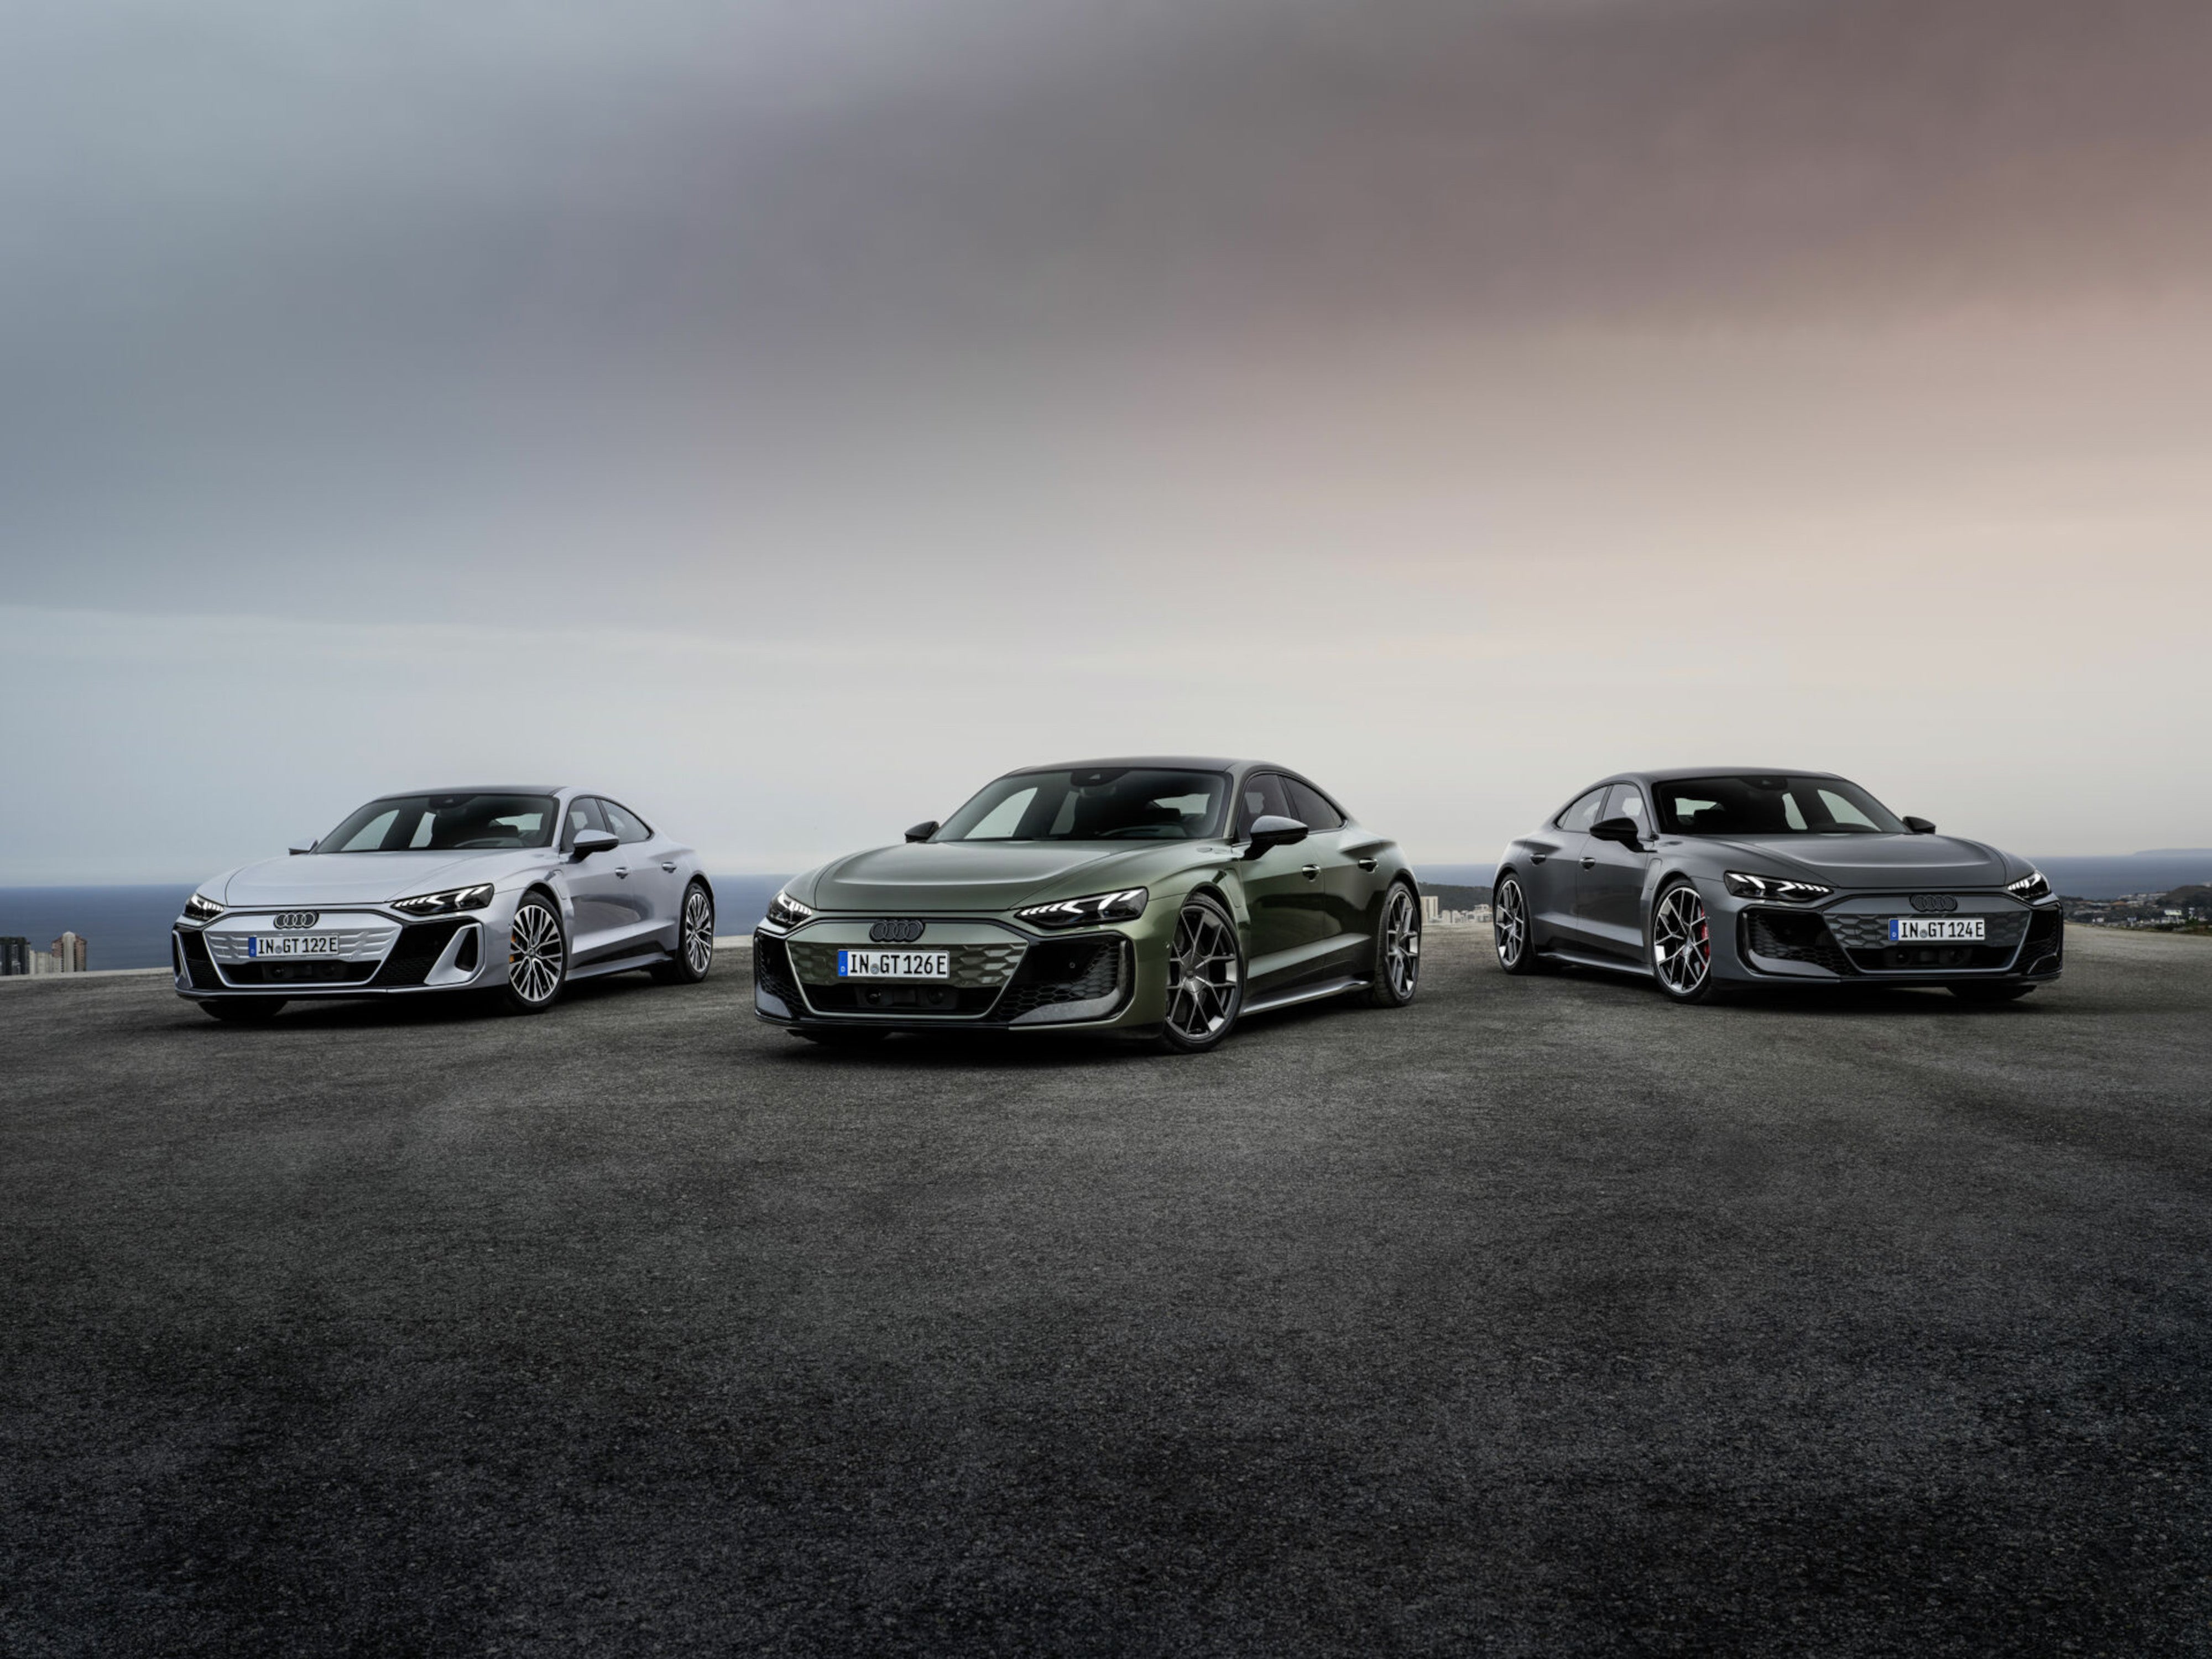 #Teurer, besser, schneller? Audi stellt neues Luxusmodell vor